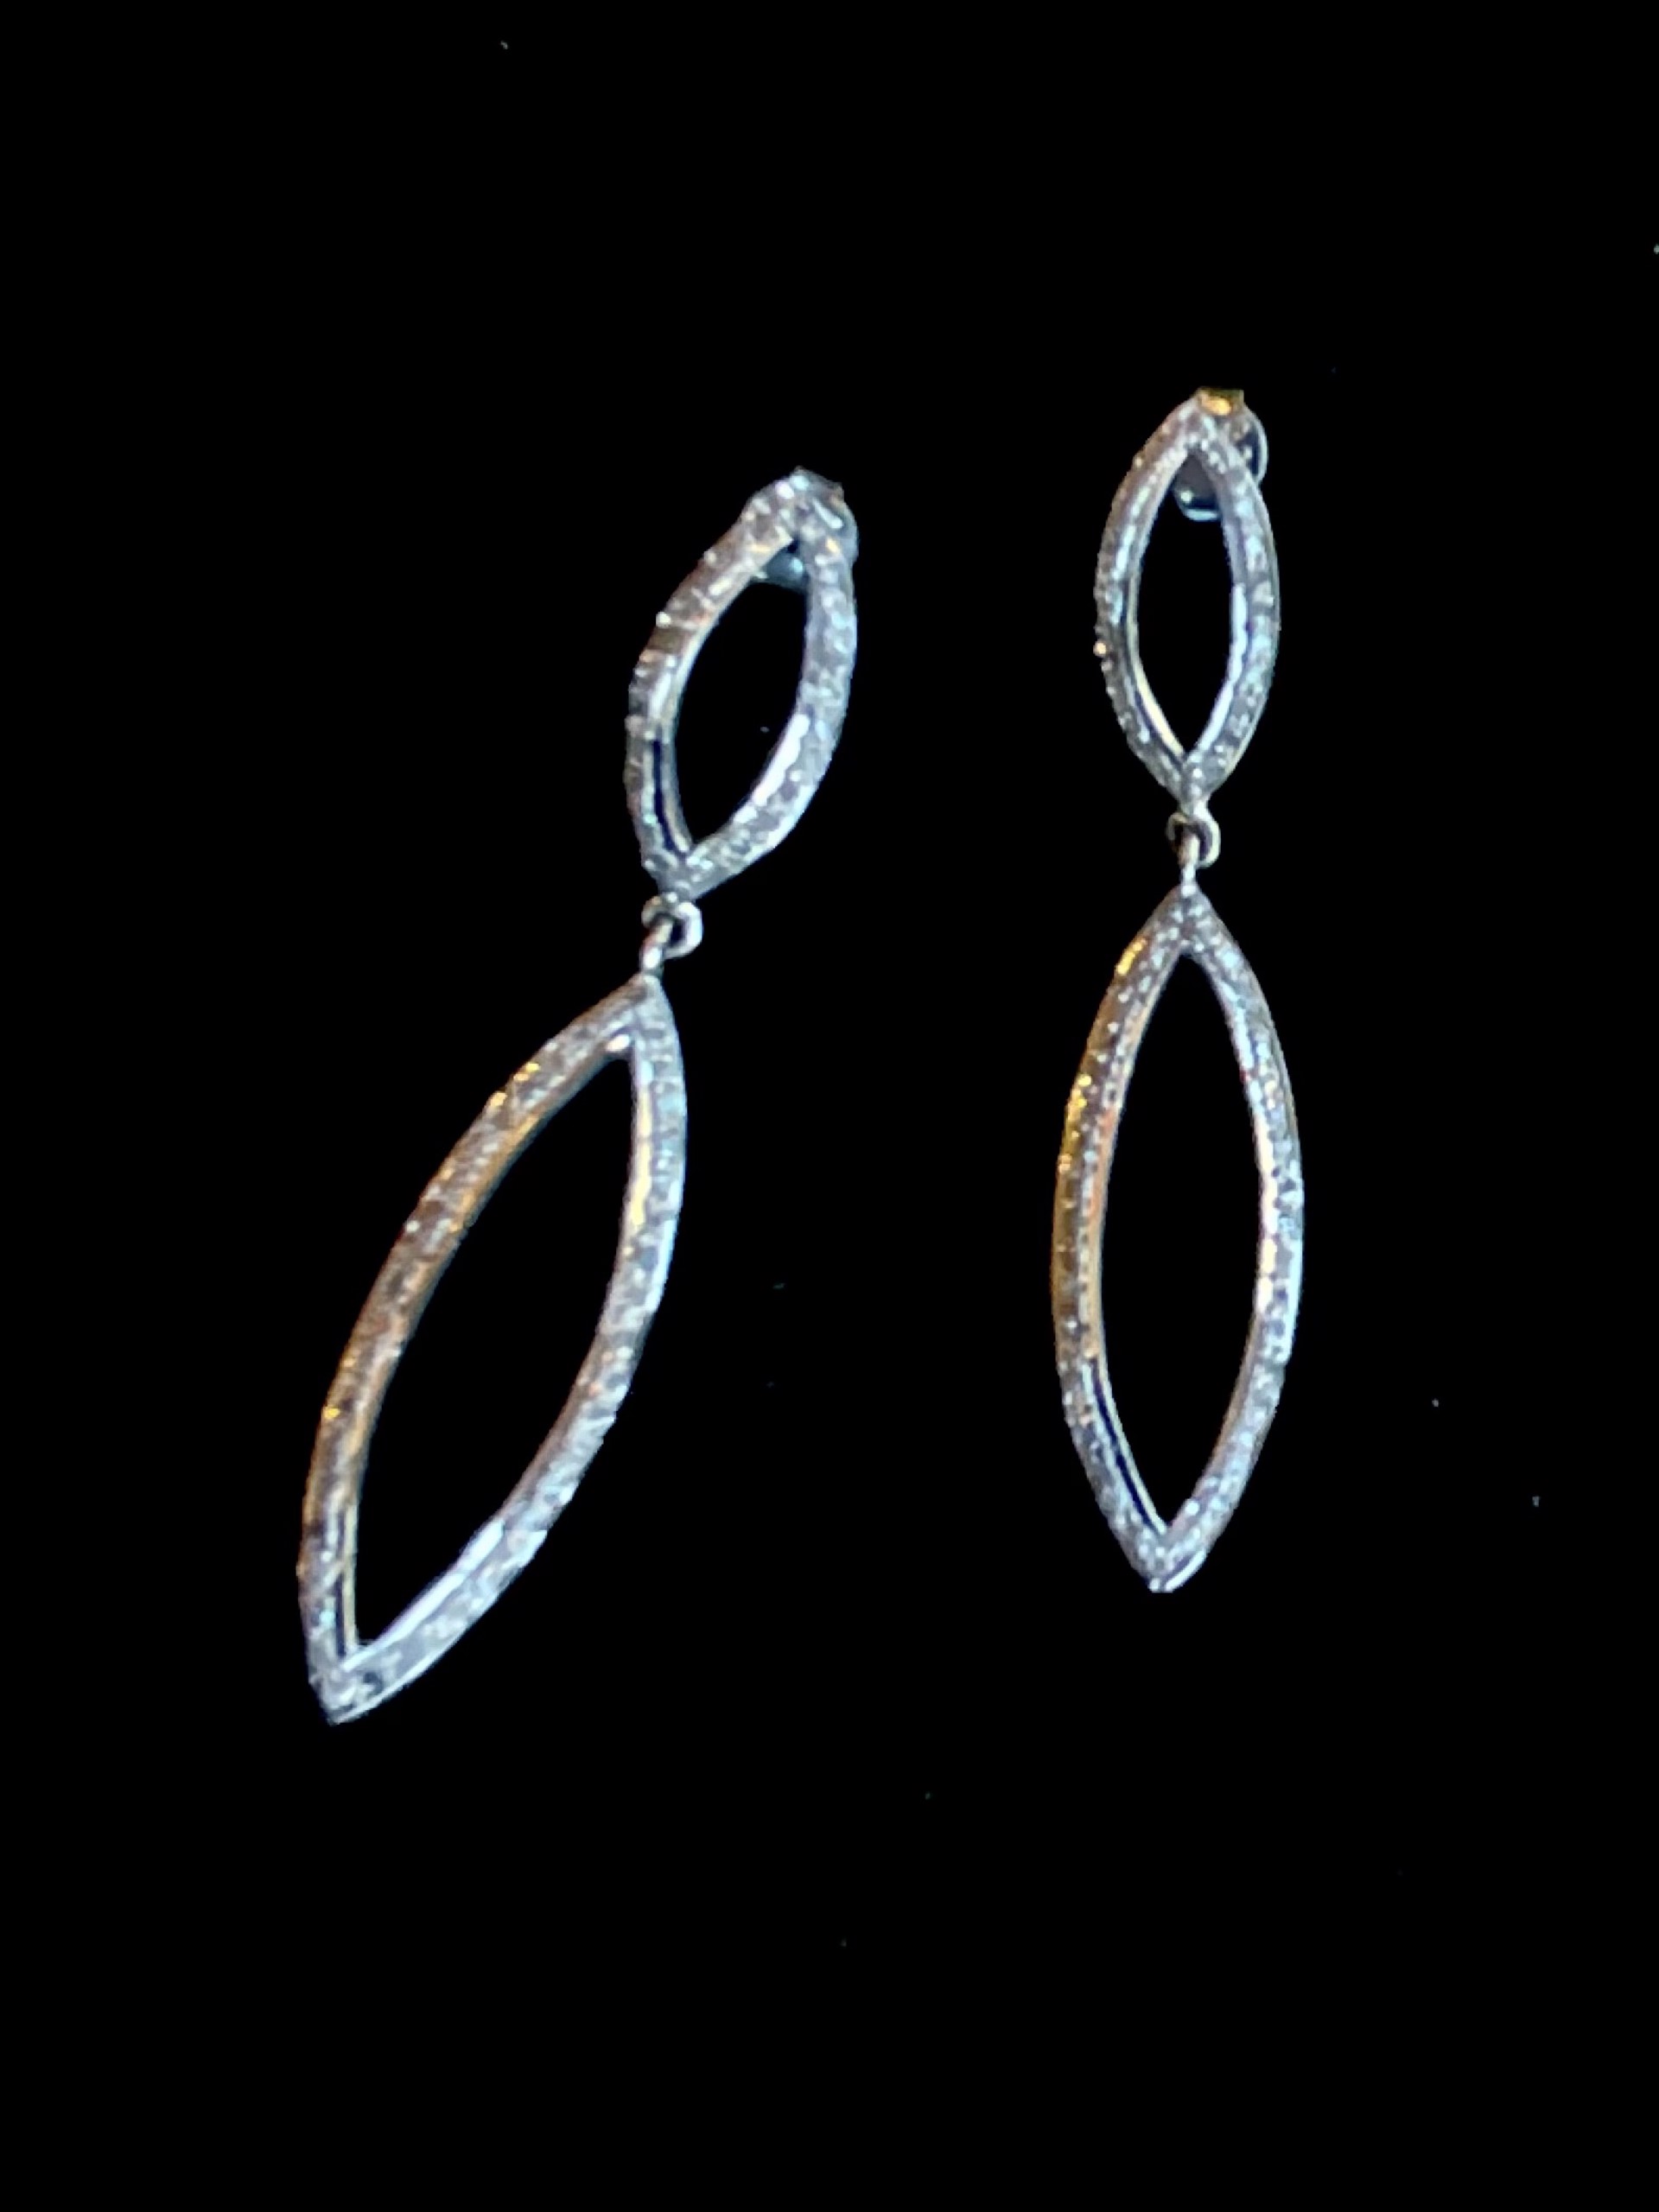 KB-E31 OxSS Pave Diamond Long Double Oval Earrings by Karen Birchmier